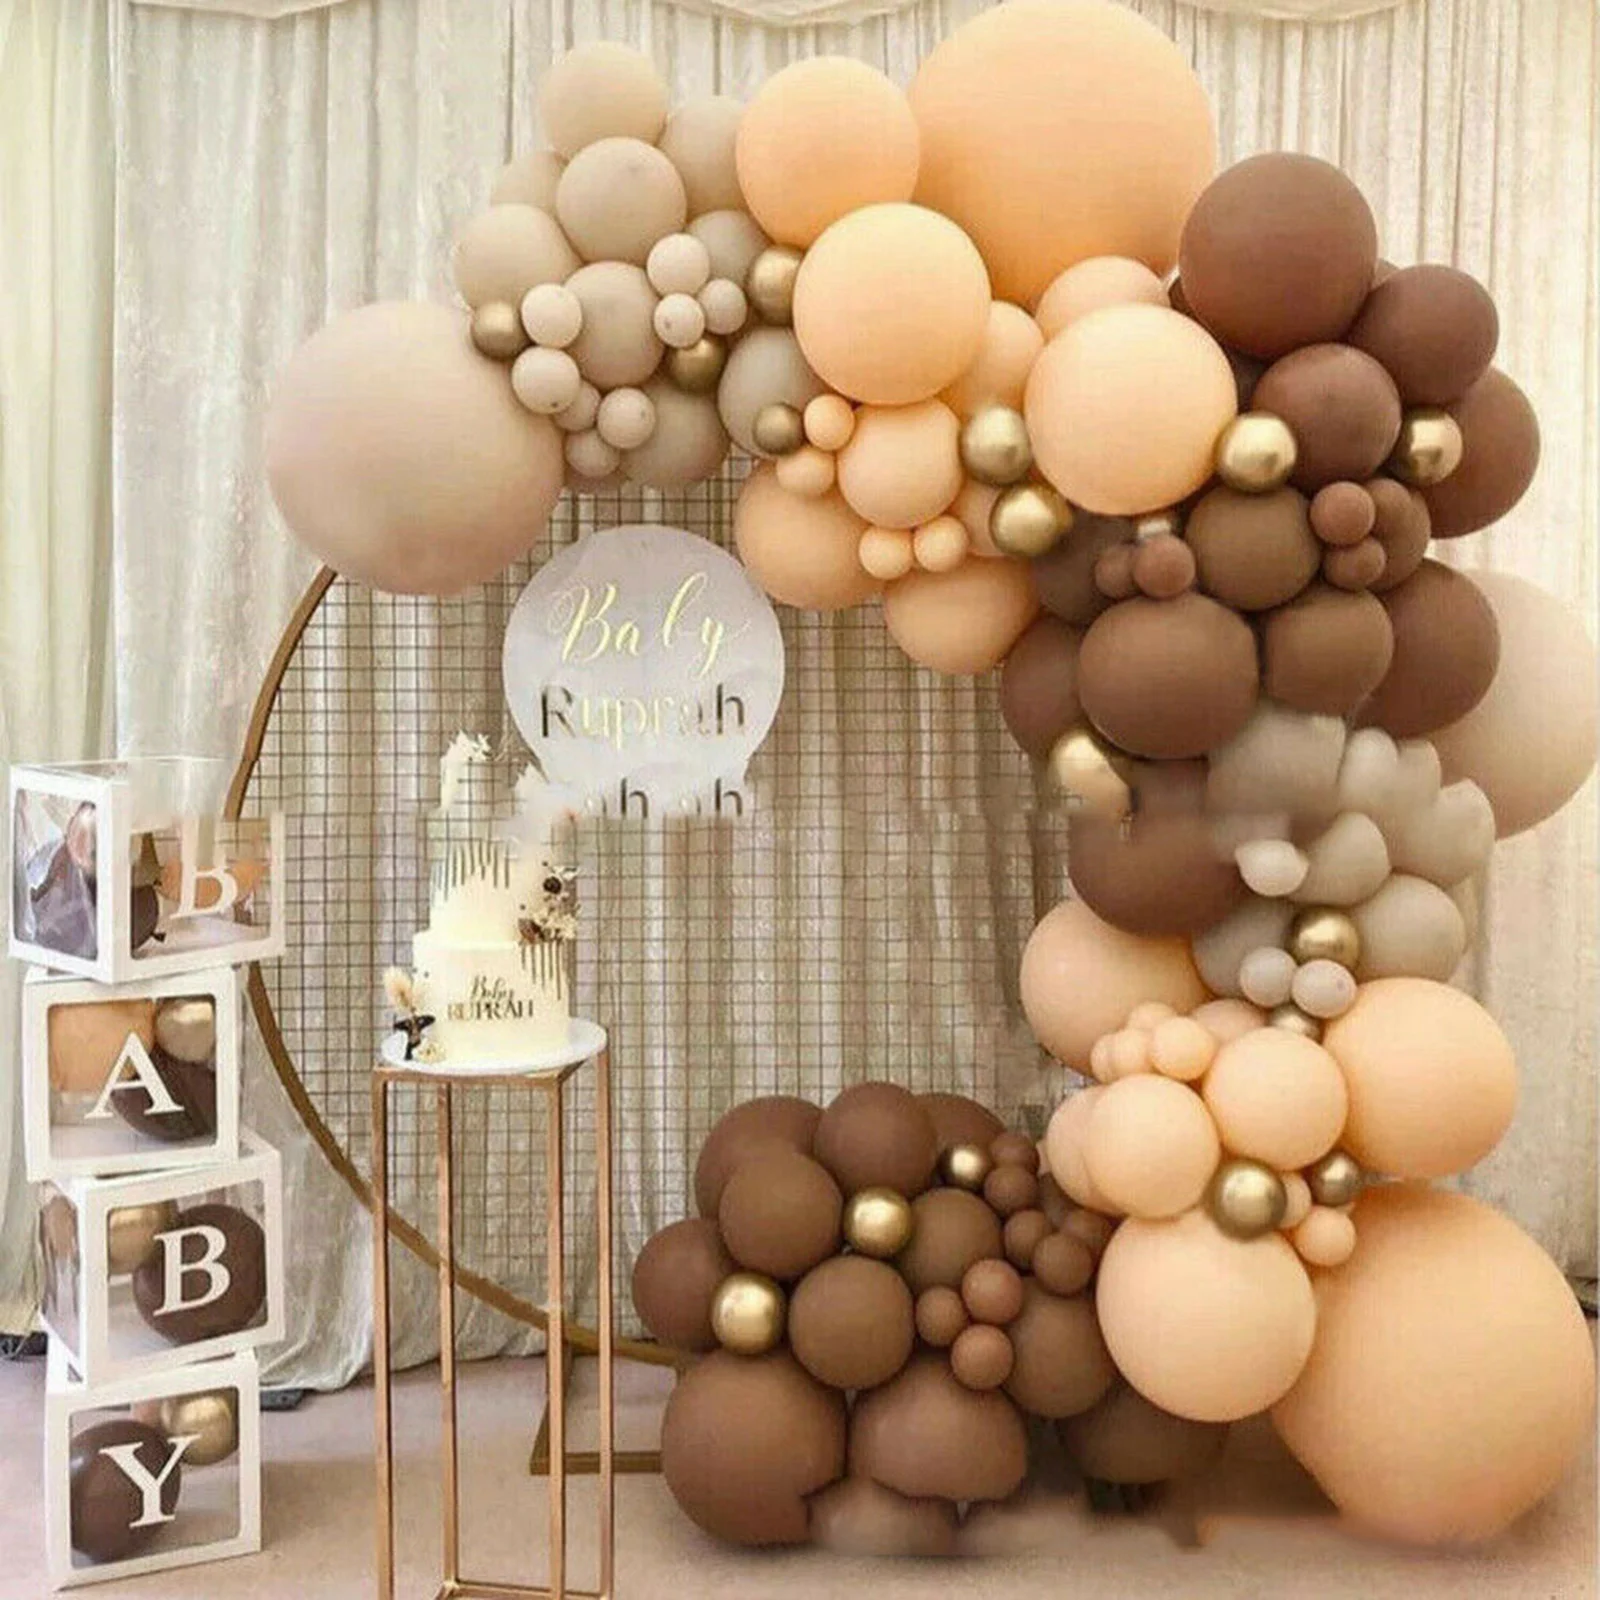 

Гирлянда с воздушными шарами в стиле ретро, кофейный крем, персиковые шары, набор латексных шаров для украшения свадьбы, дня рождения, вечер...